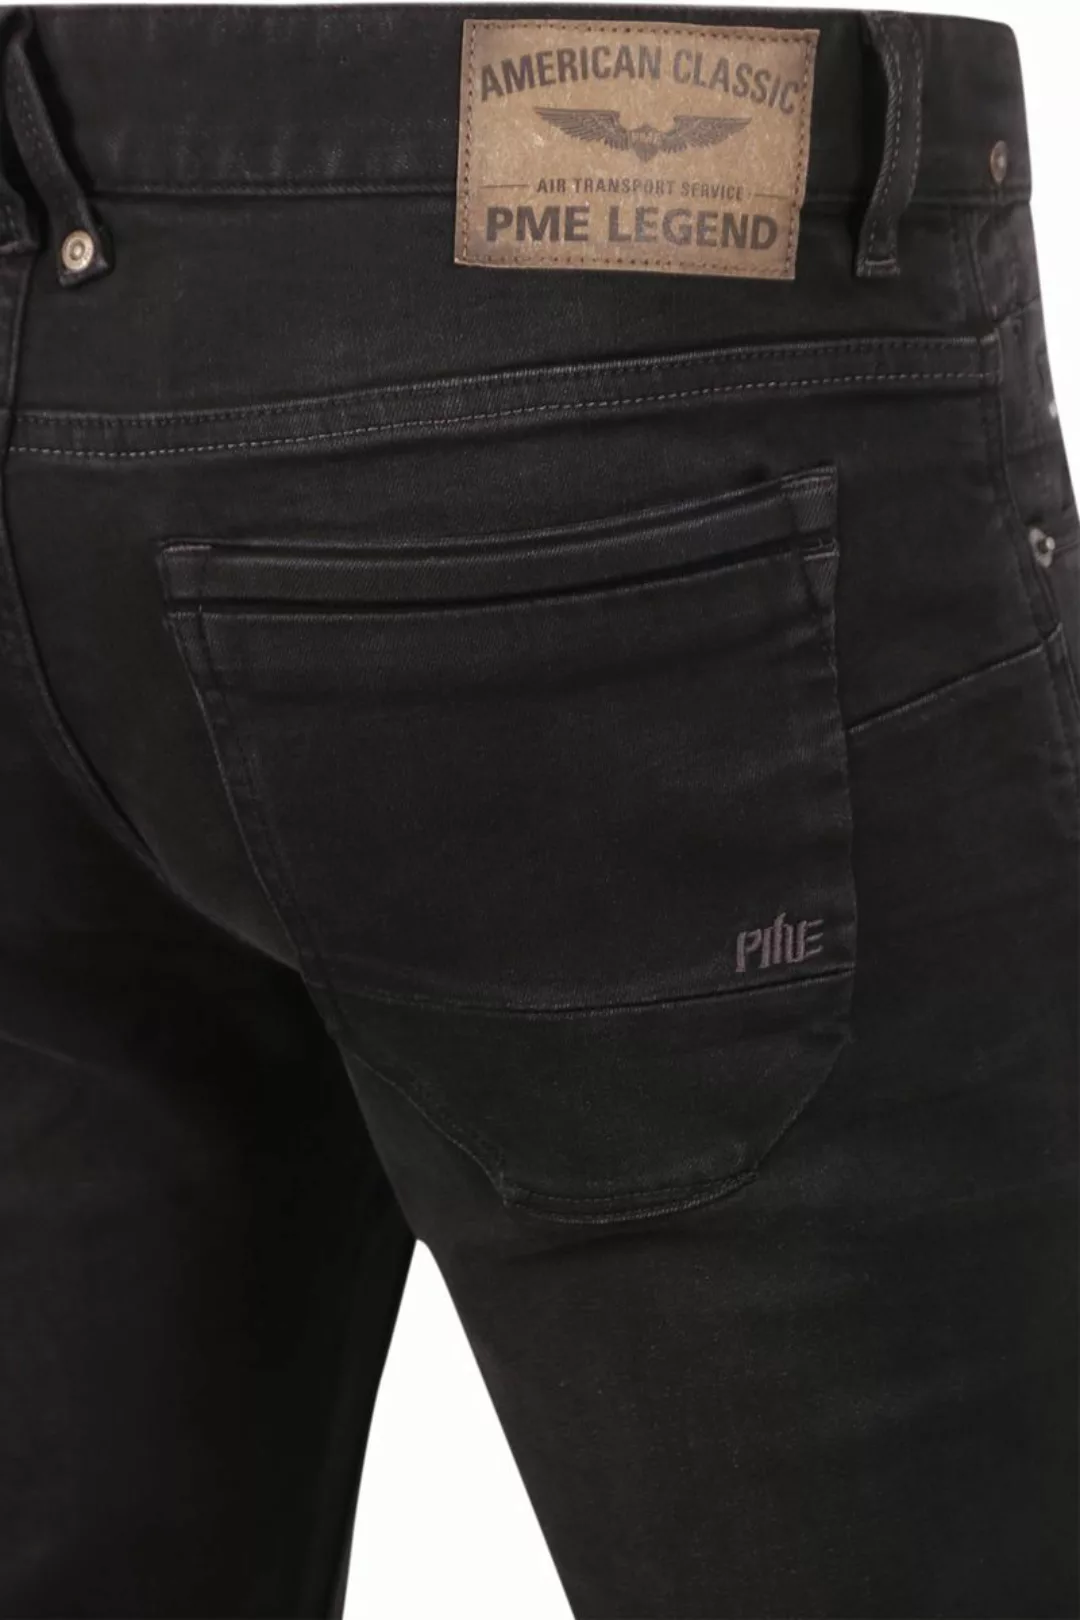 PME Legend Nightflight Jeans Schwarz RBD - Größe W 38 - L 32 günstig online kaufen